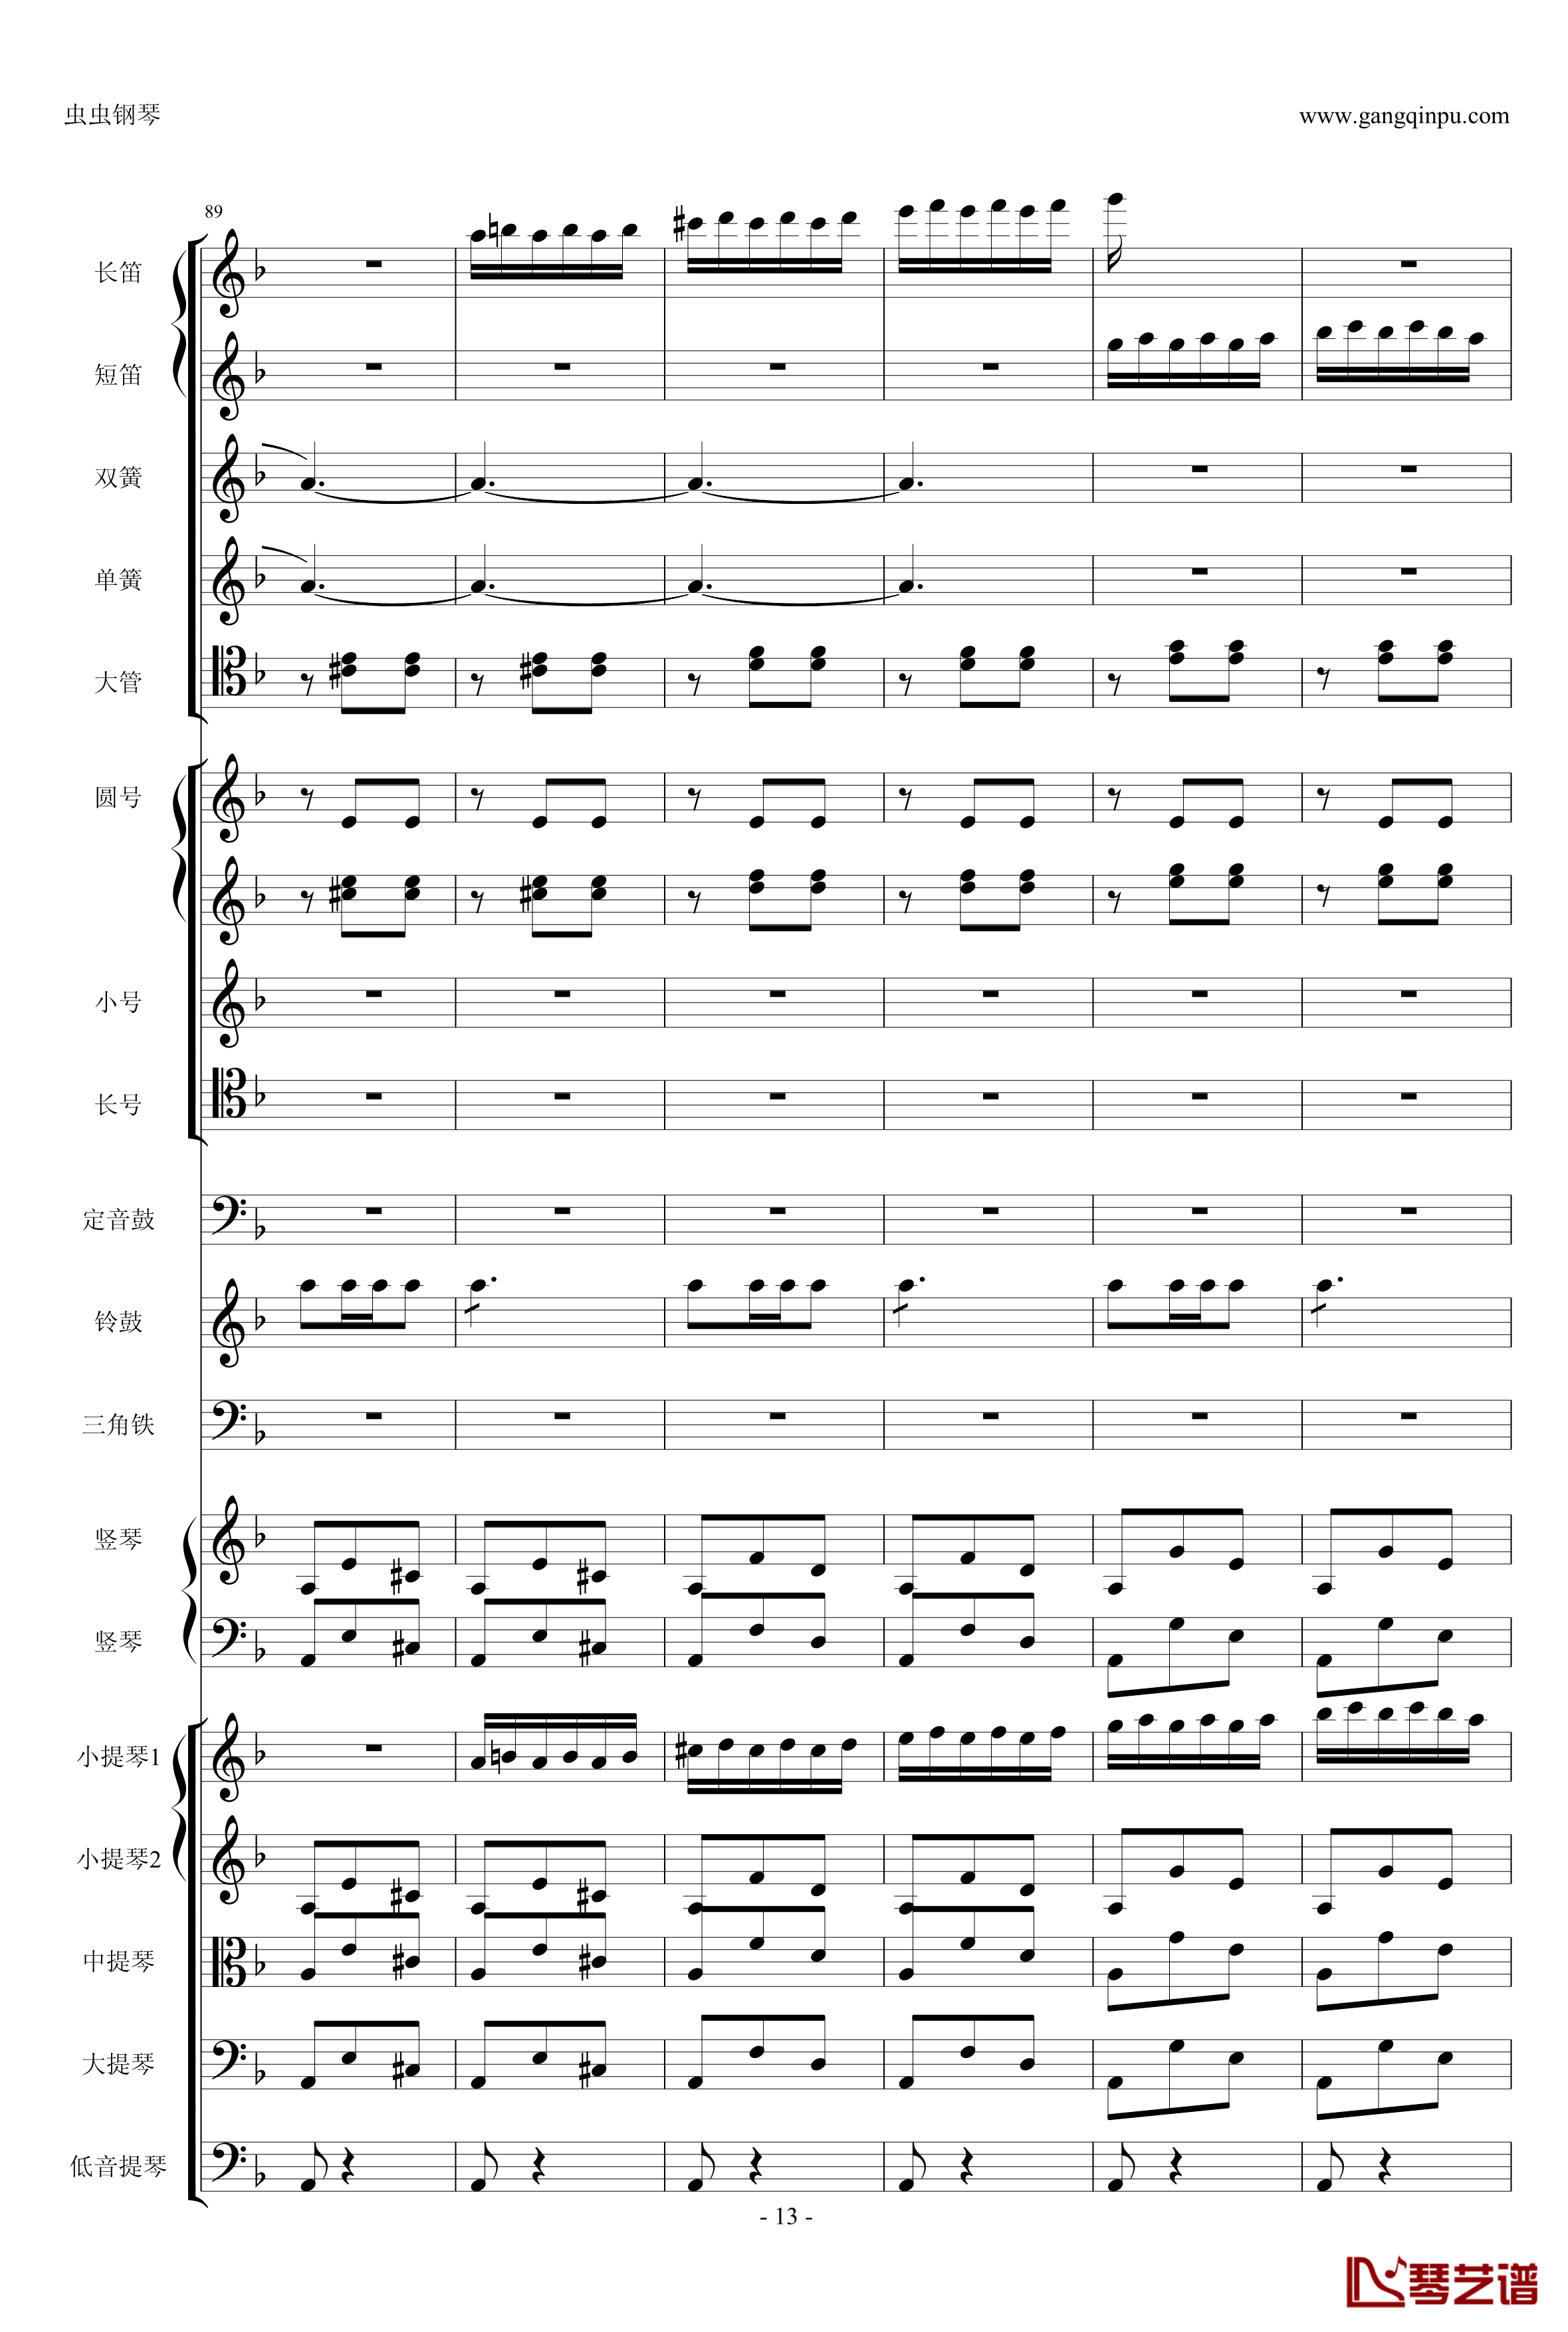 歌剧卡门选段钢琴谱-比才-Bizet- 第四幕间奏曲13